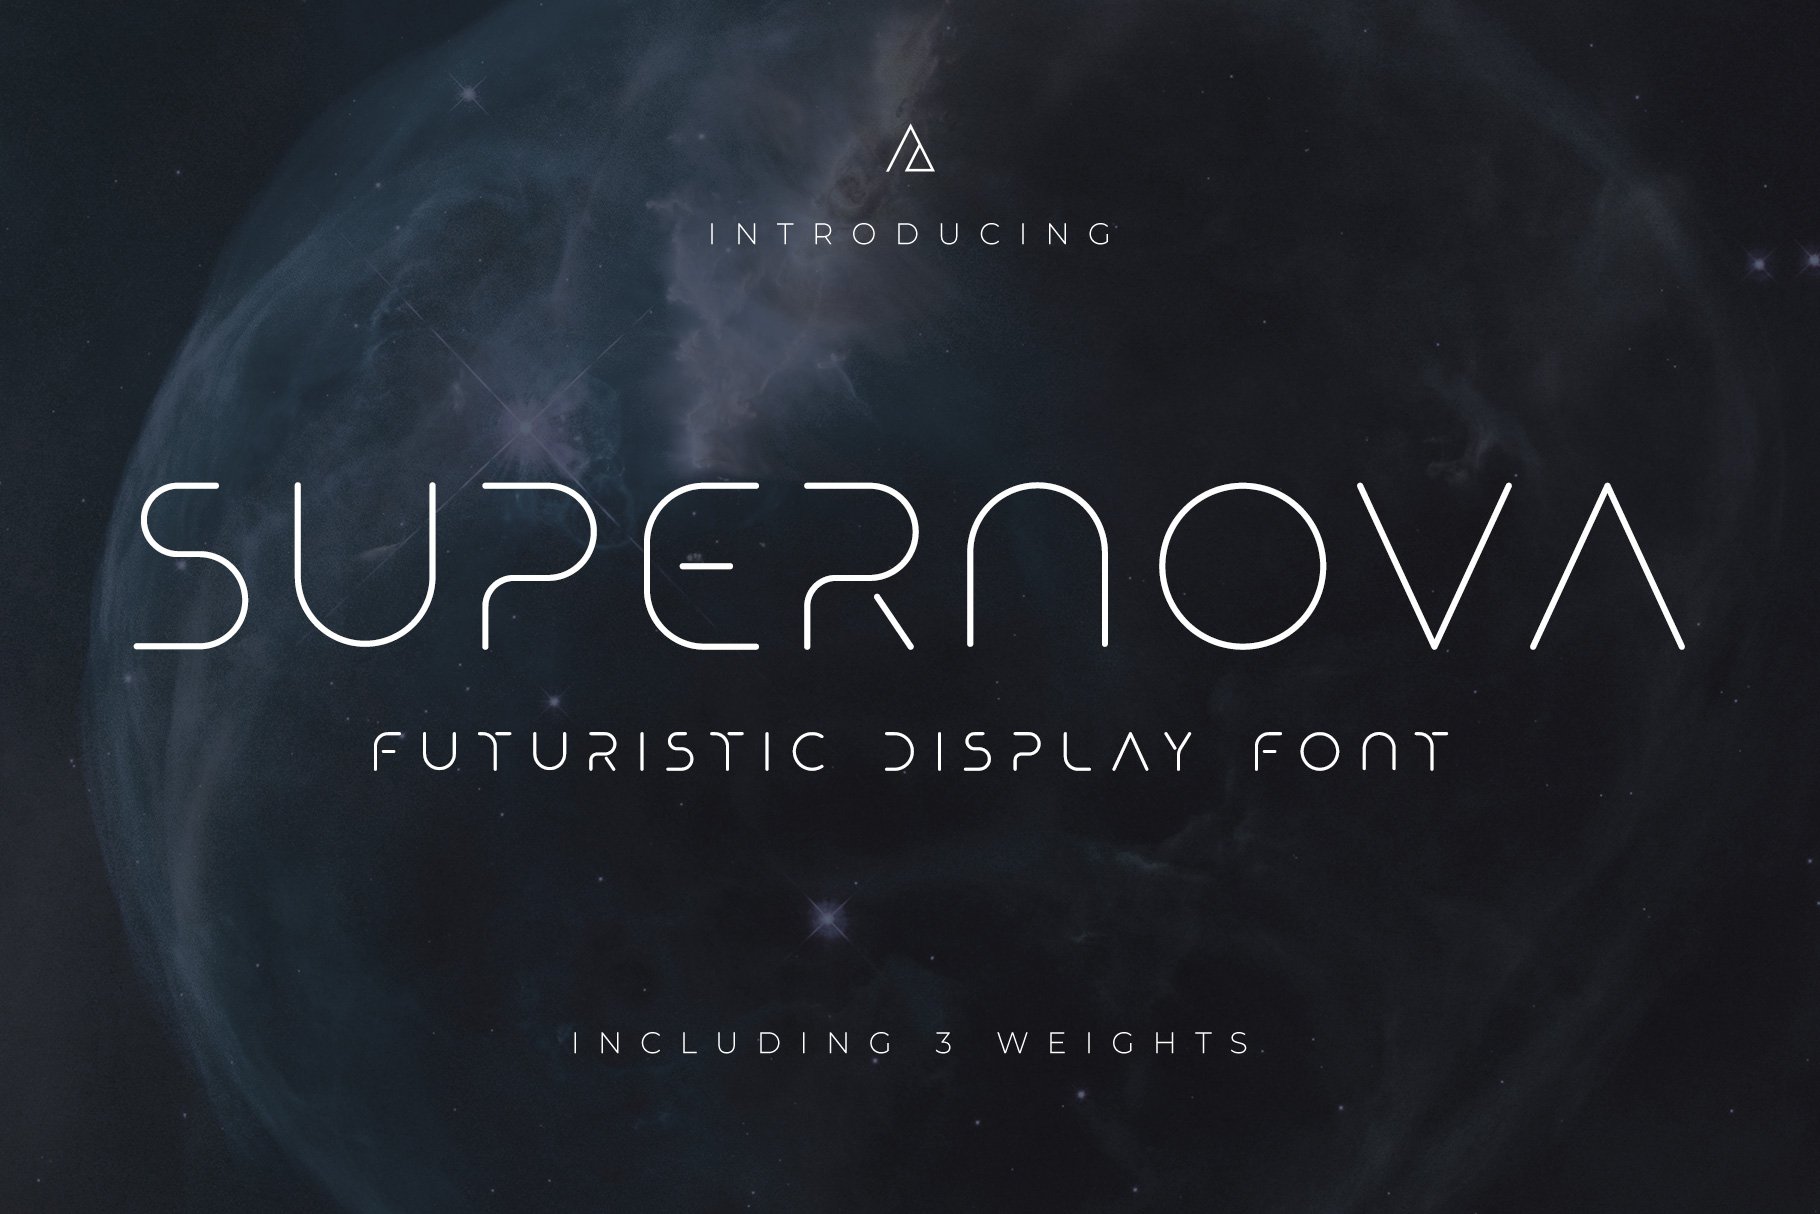 Supernova - Futuristic Display Font cover image.